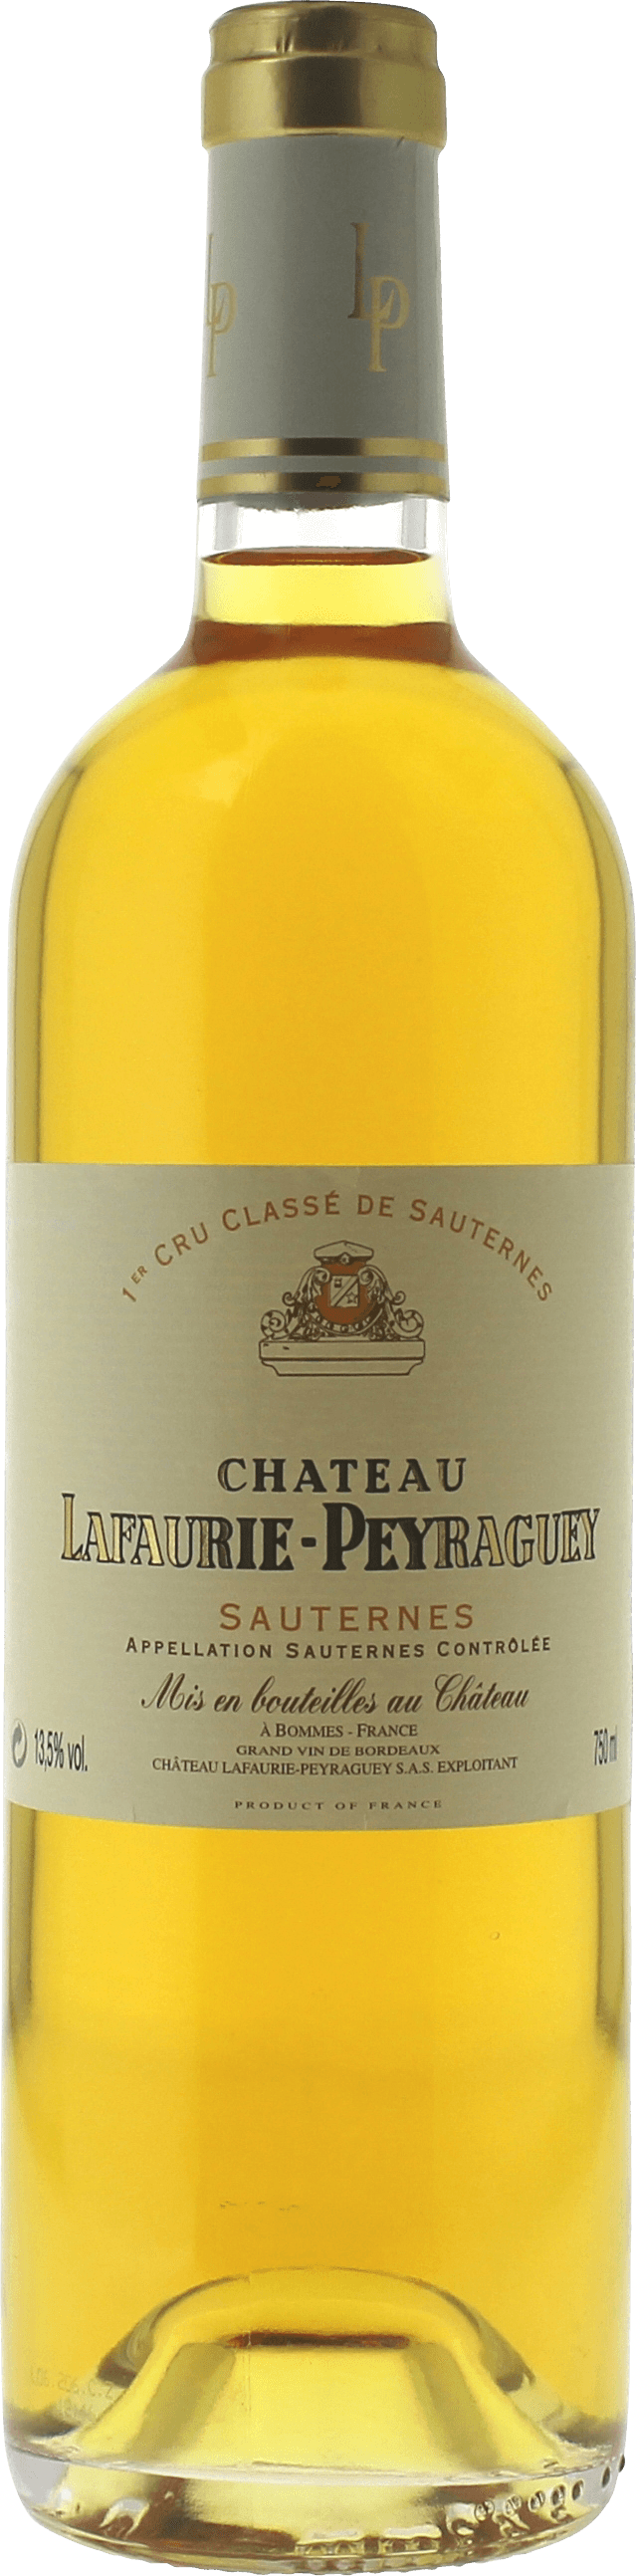 Lafaurie peyraguey 1989  Sauternes, Bordeaux blanc